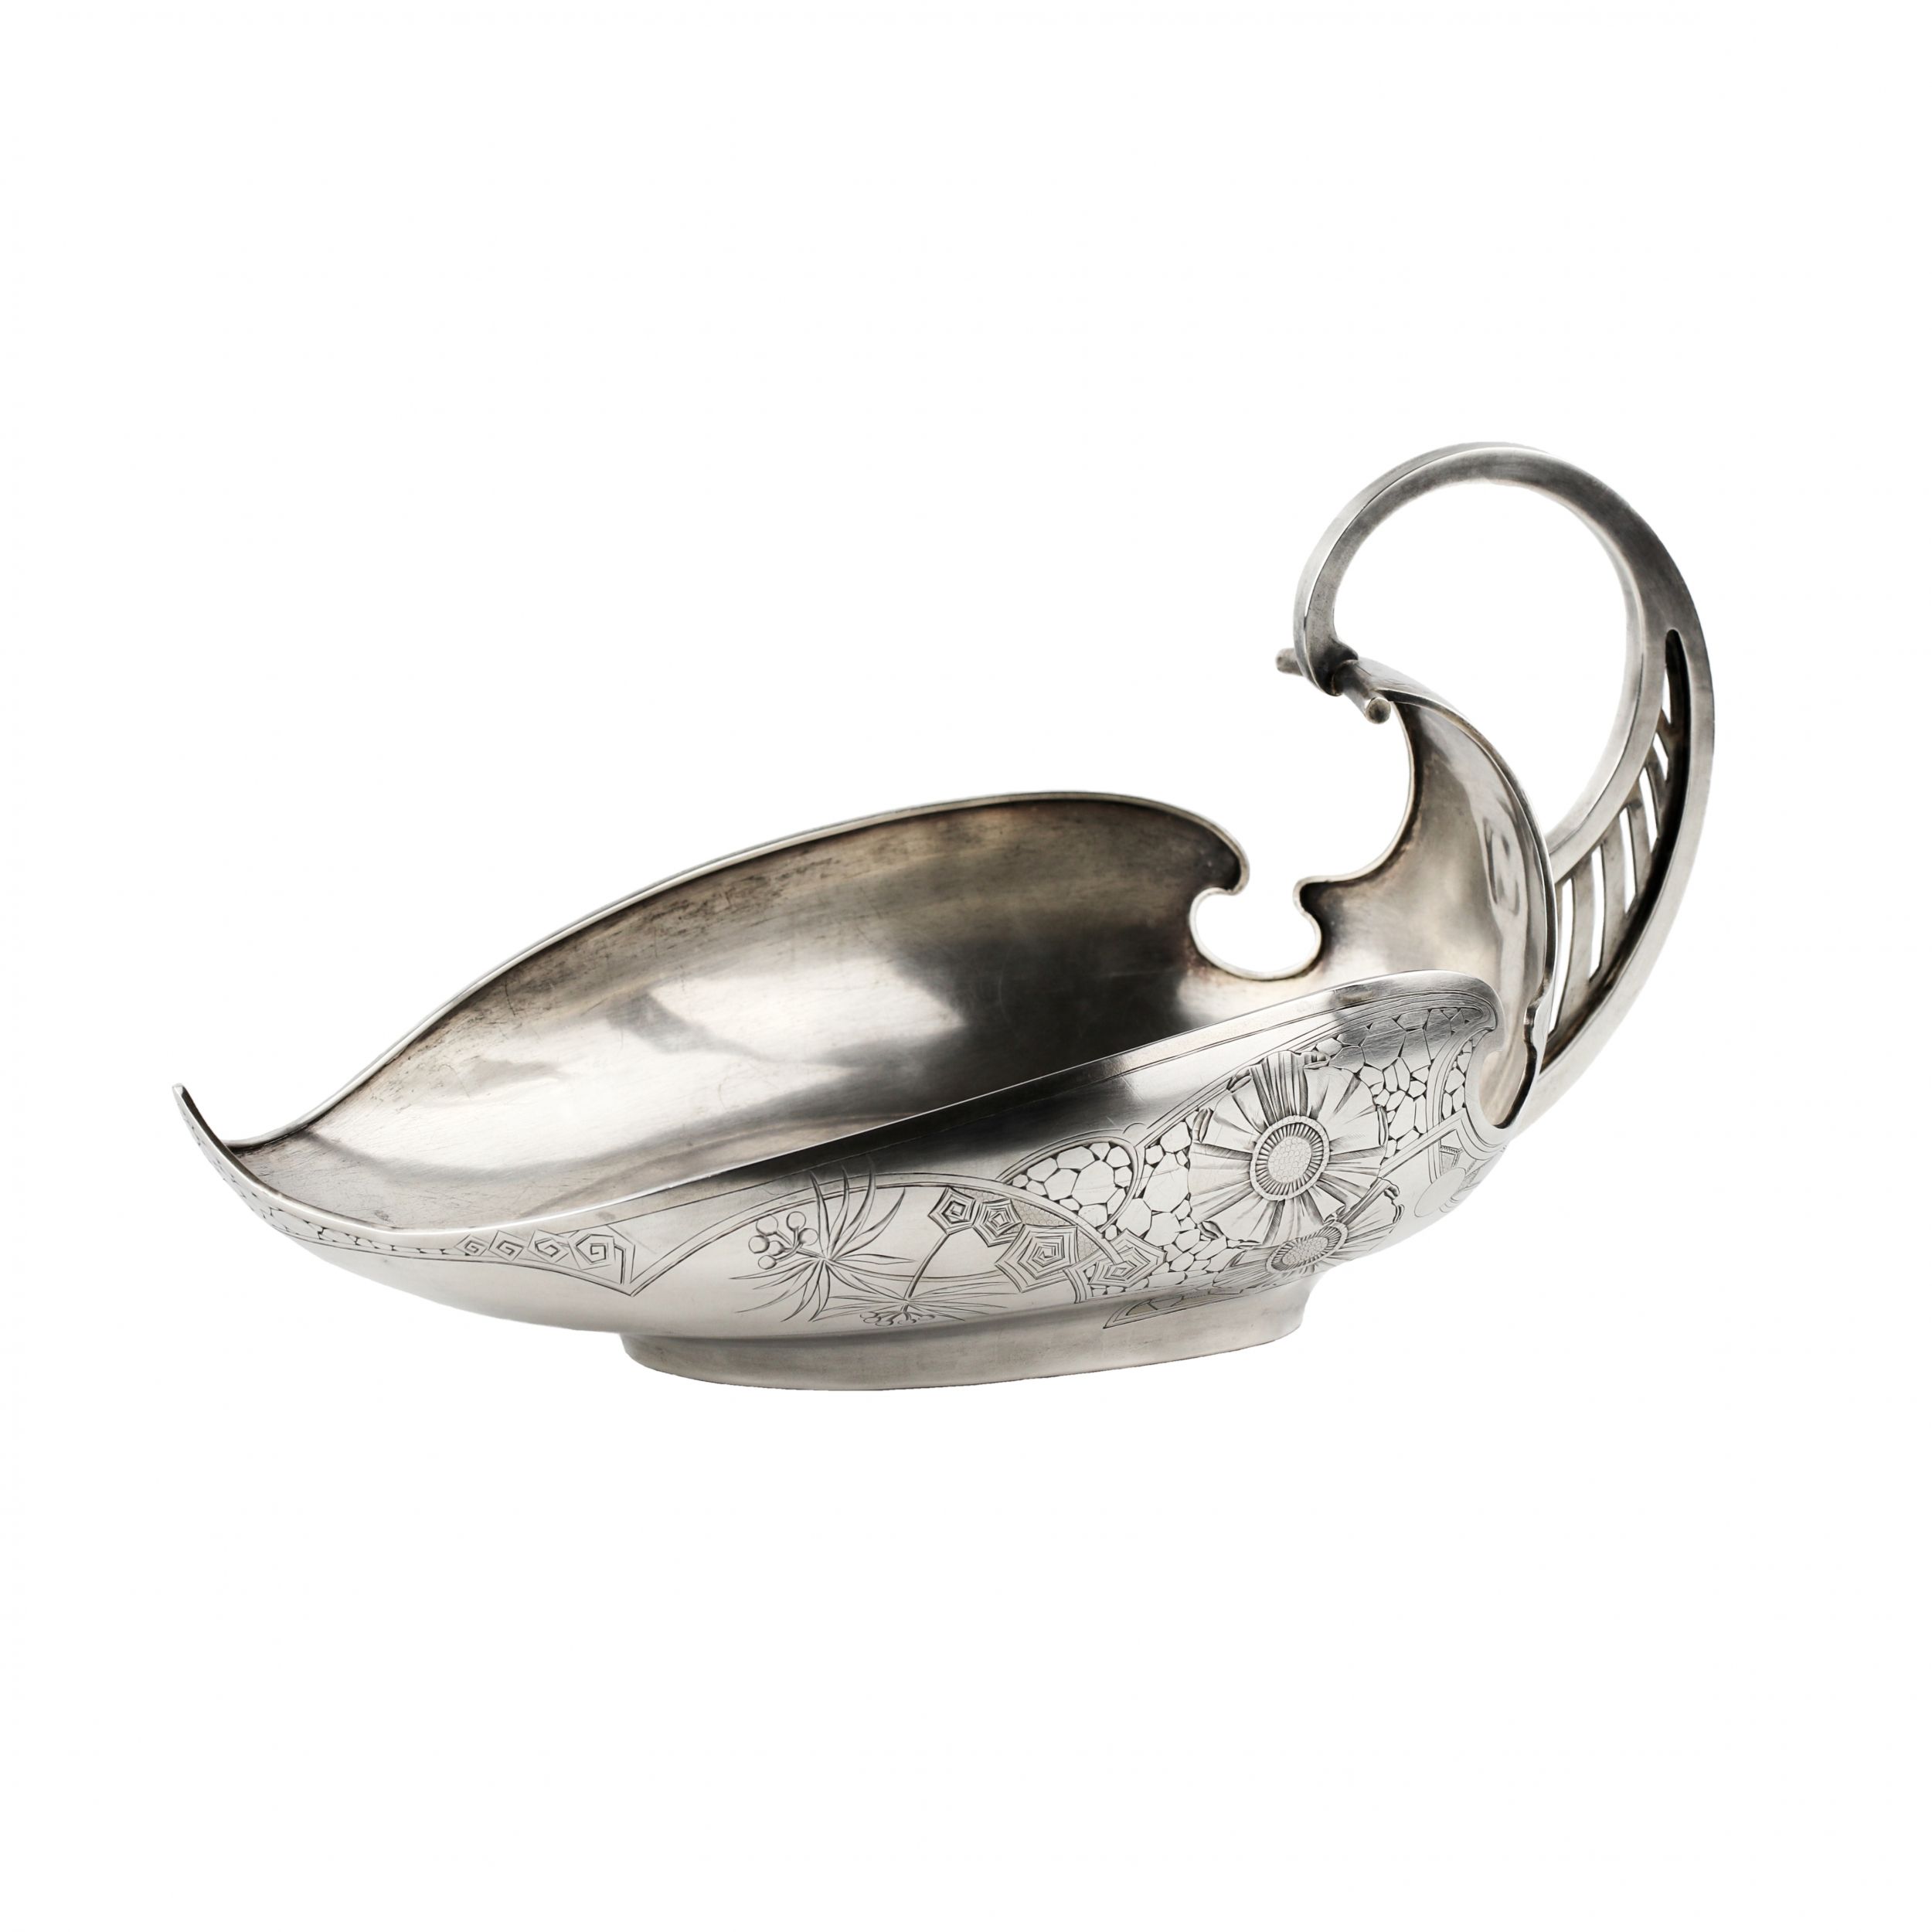 Art-Nouveau-silver-ladle-5th-Moscow-Artel-1908-1917-